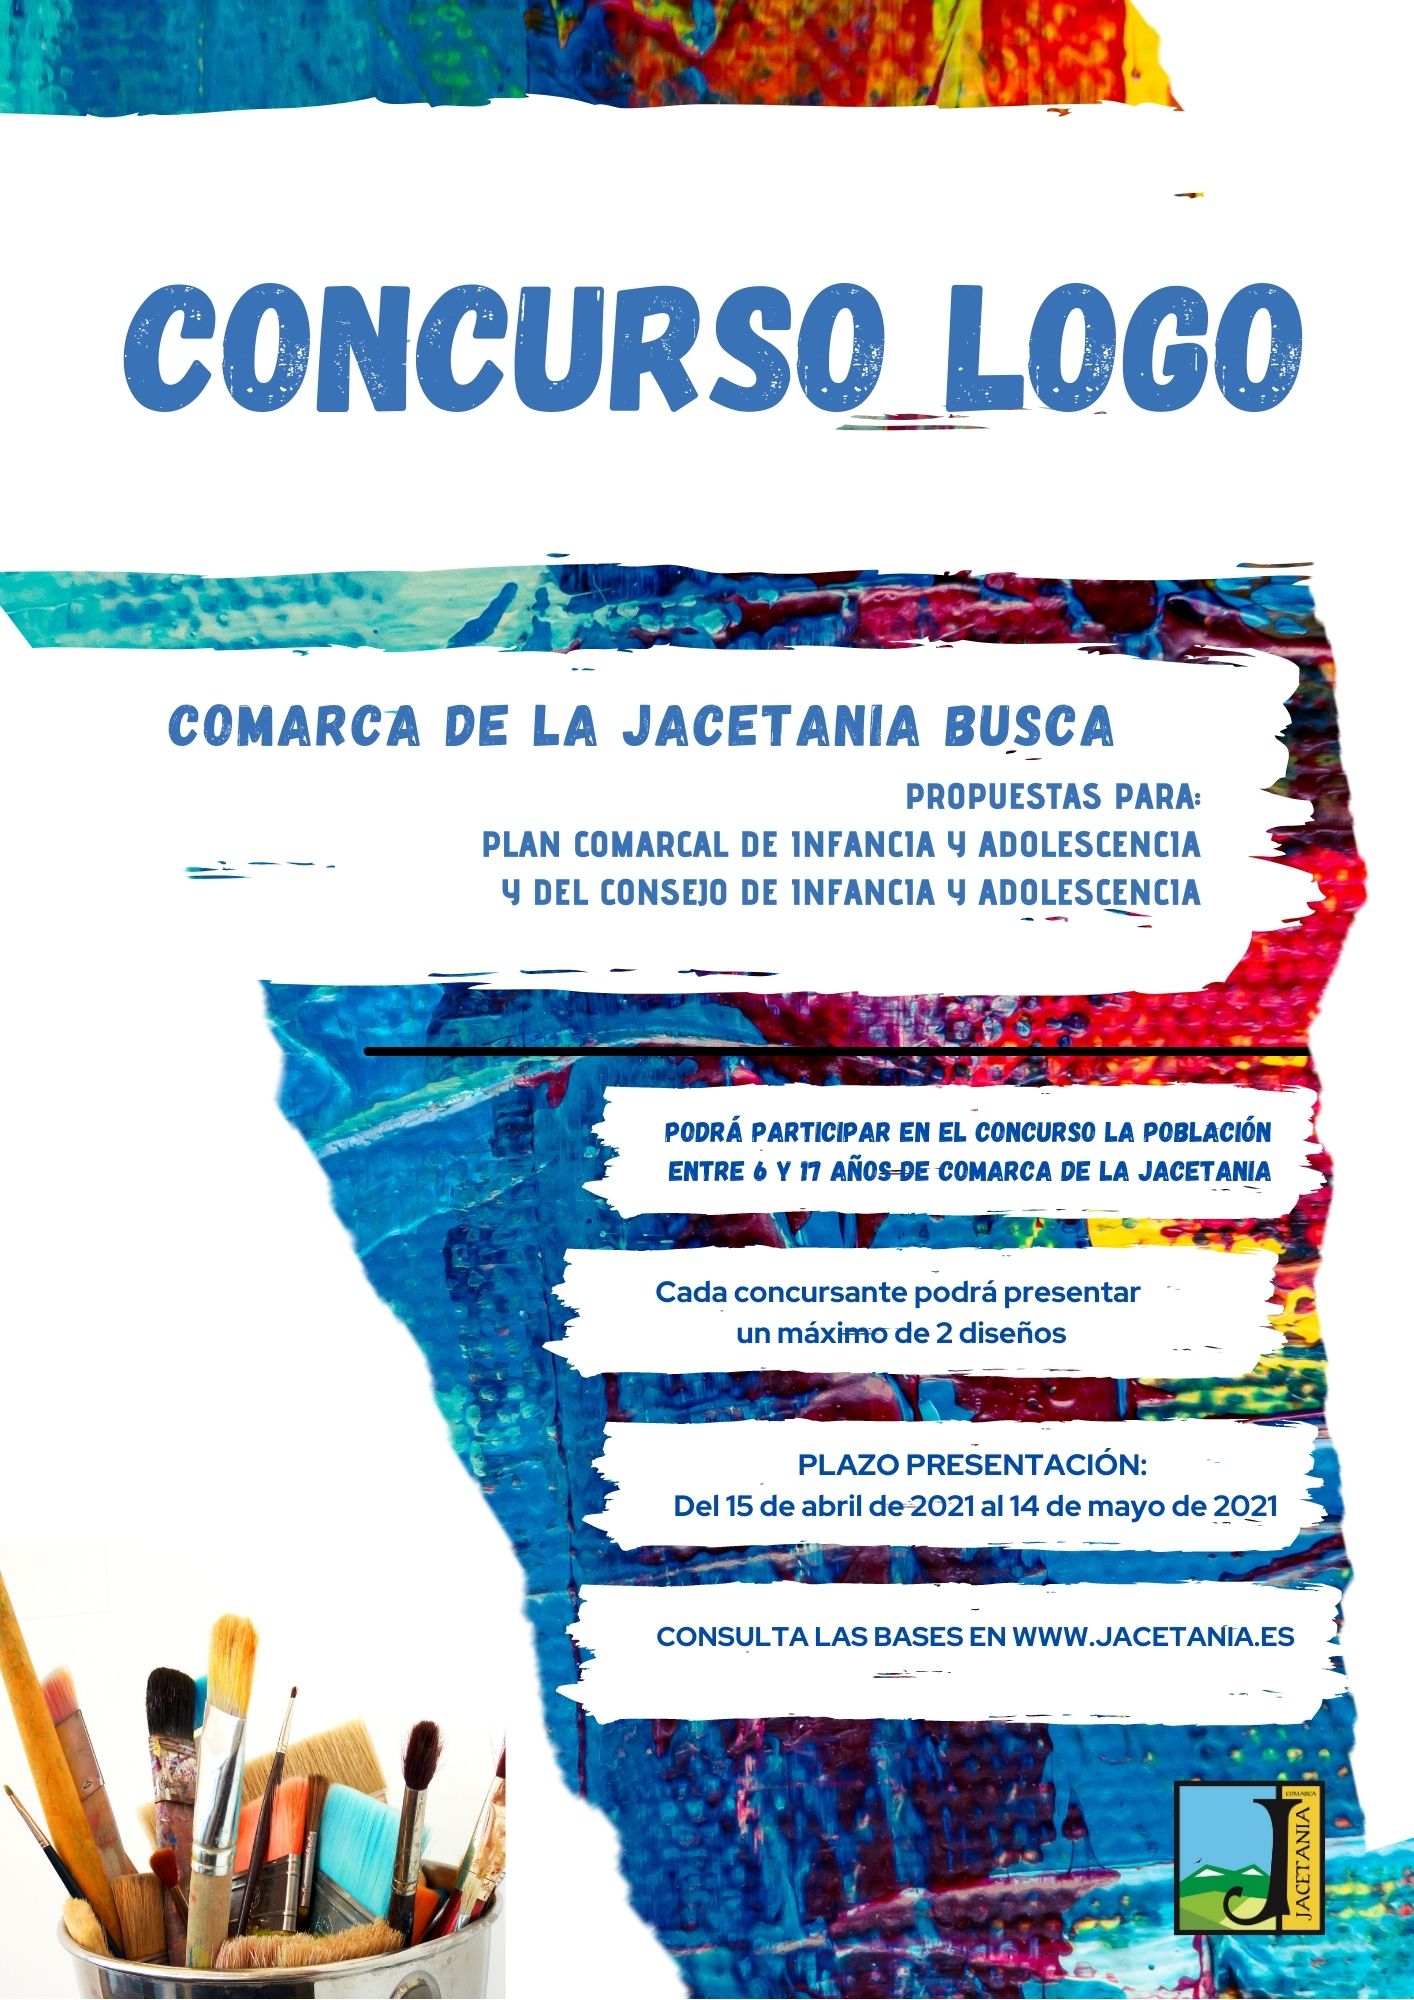 Concurso LOGO del Plan y Consejo de Infancia y Adolescencia de la Comarca de la Jacetania